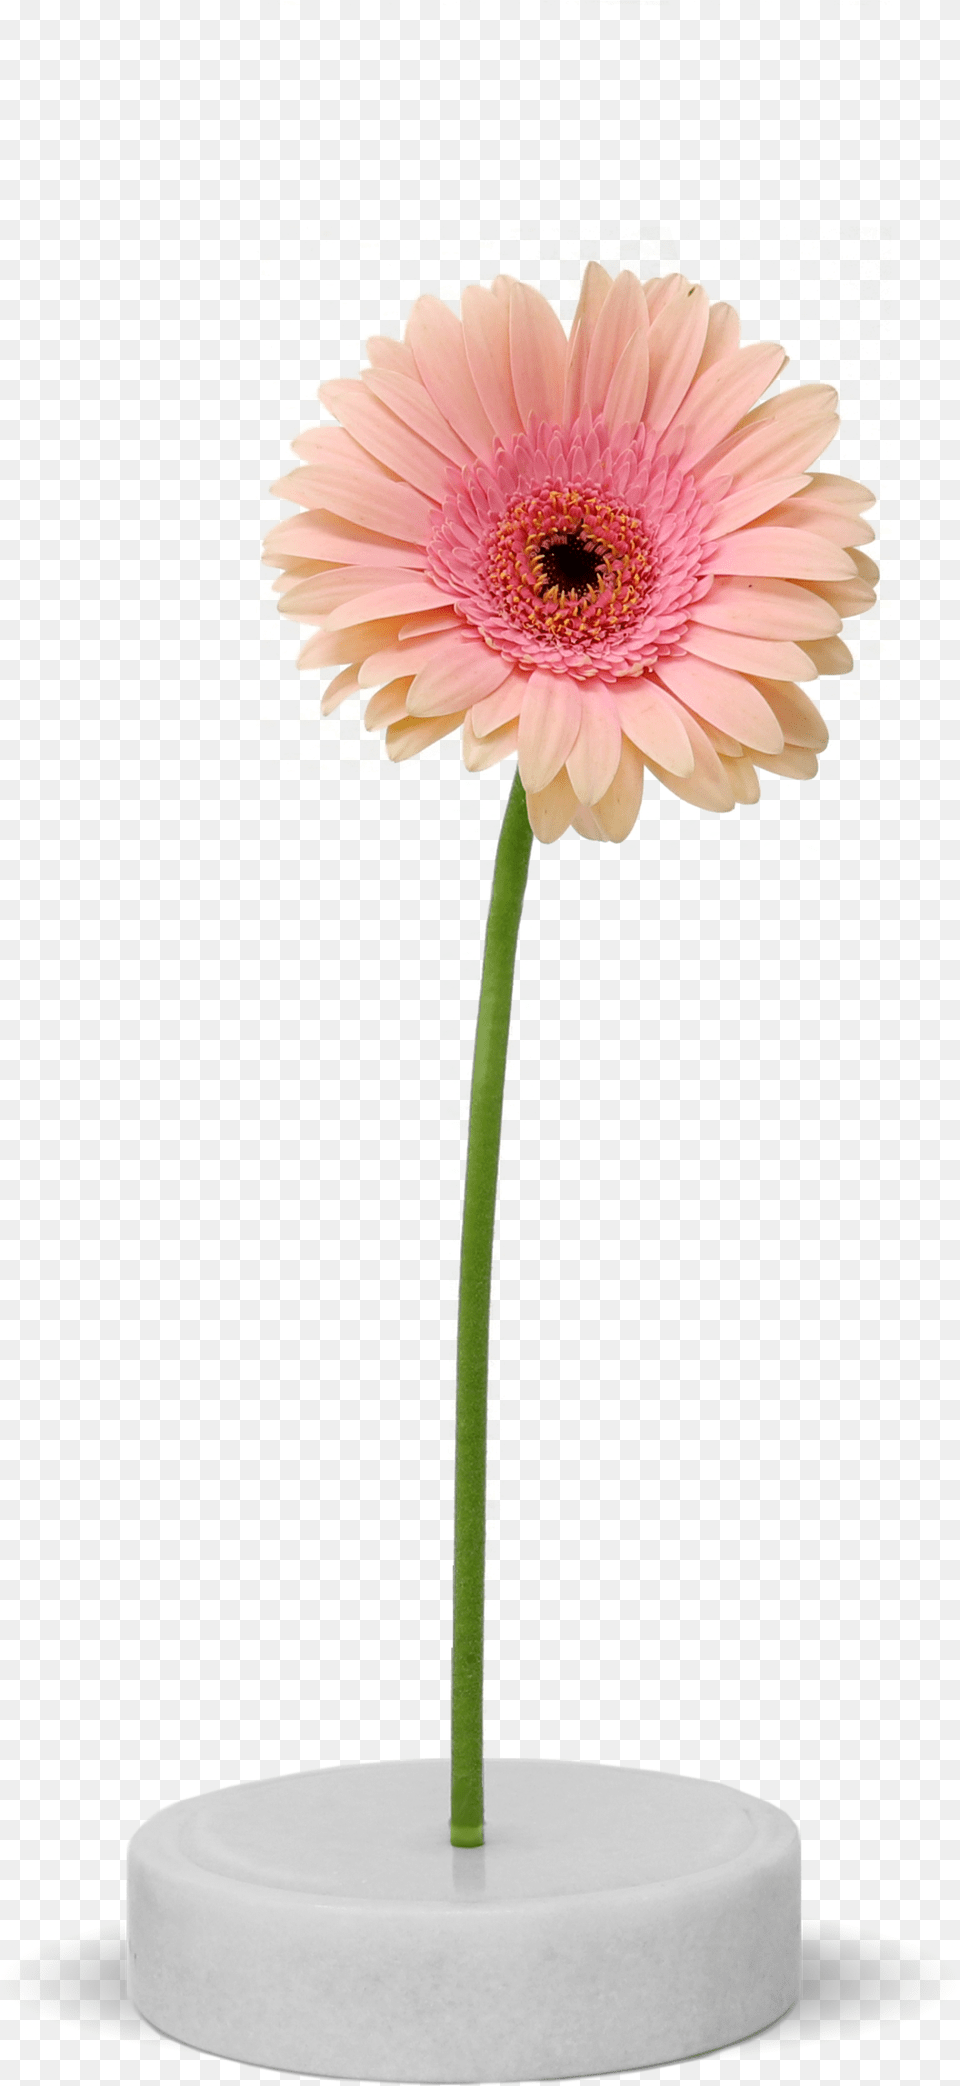 Design, Daisy, Flower, Flower Arrangement, Plant Free Transparent Png